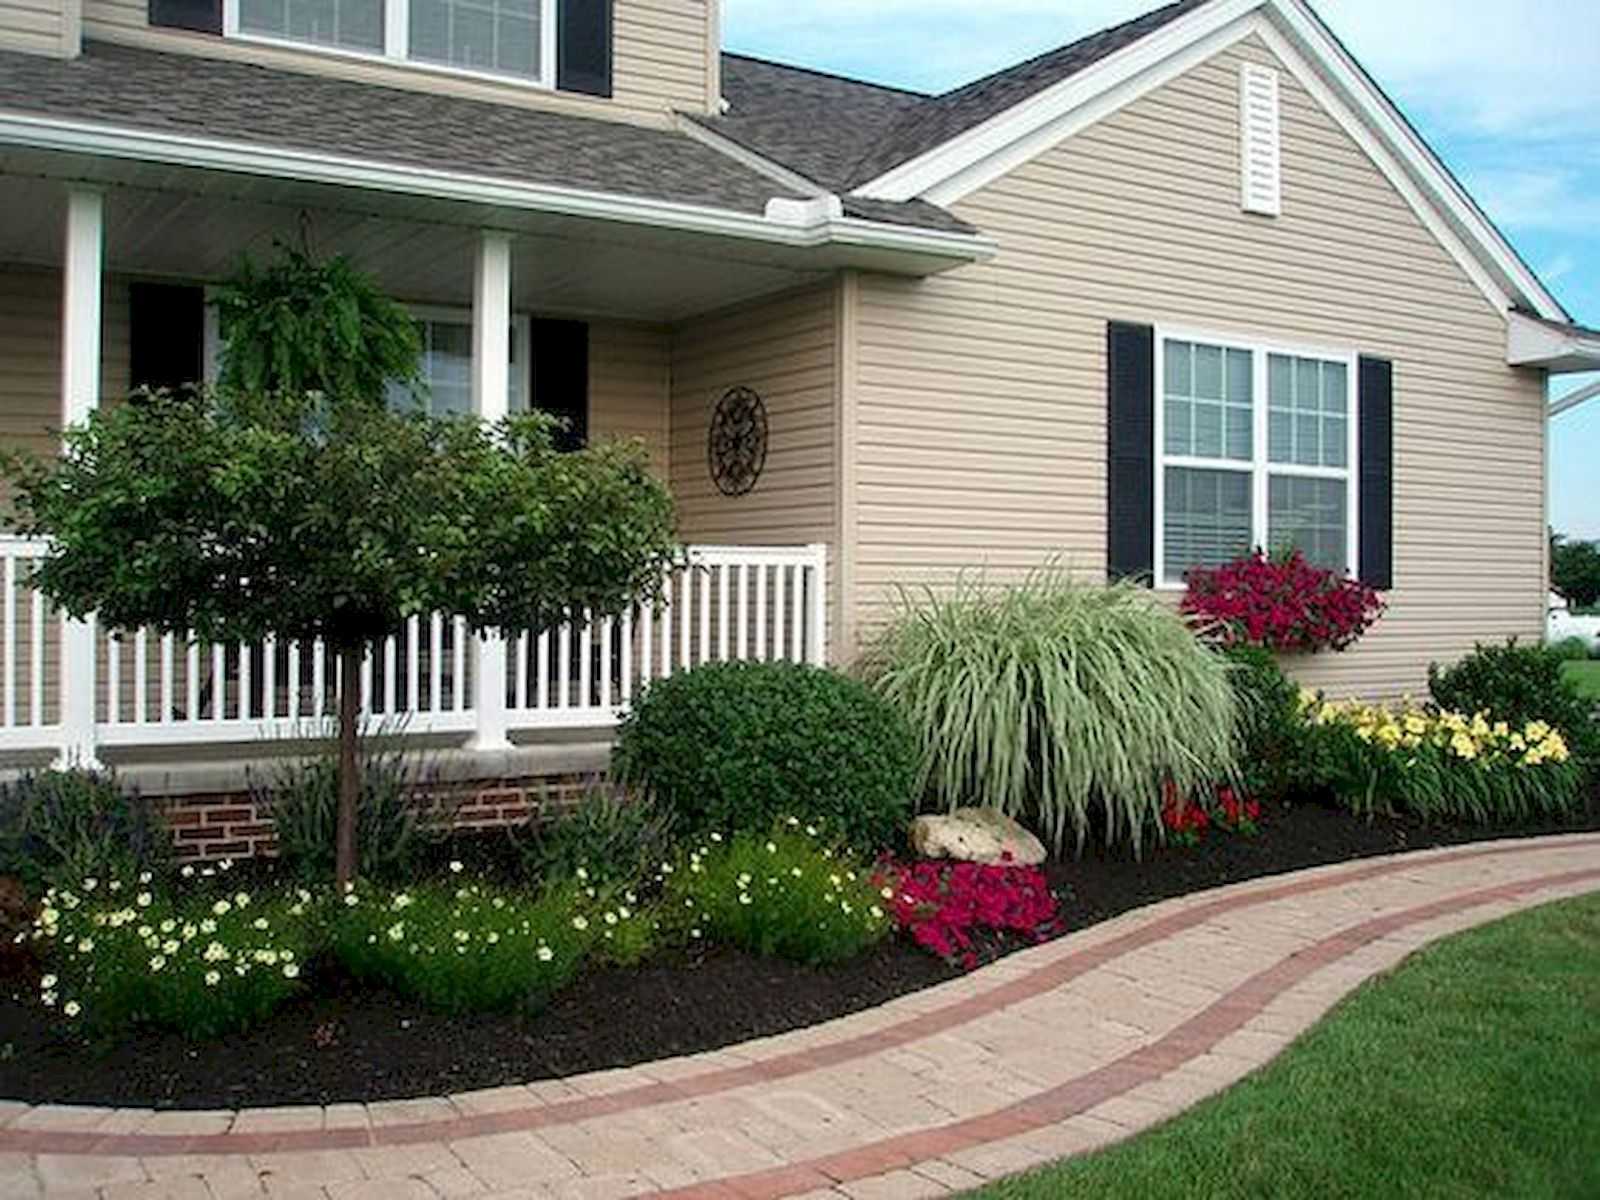 Как посадить цветы возле дома красиво фото